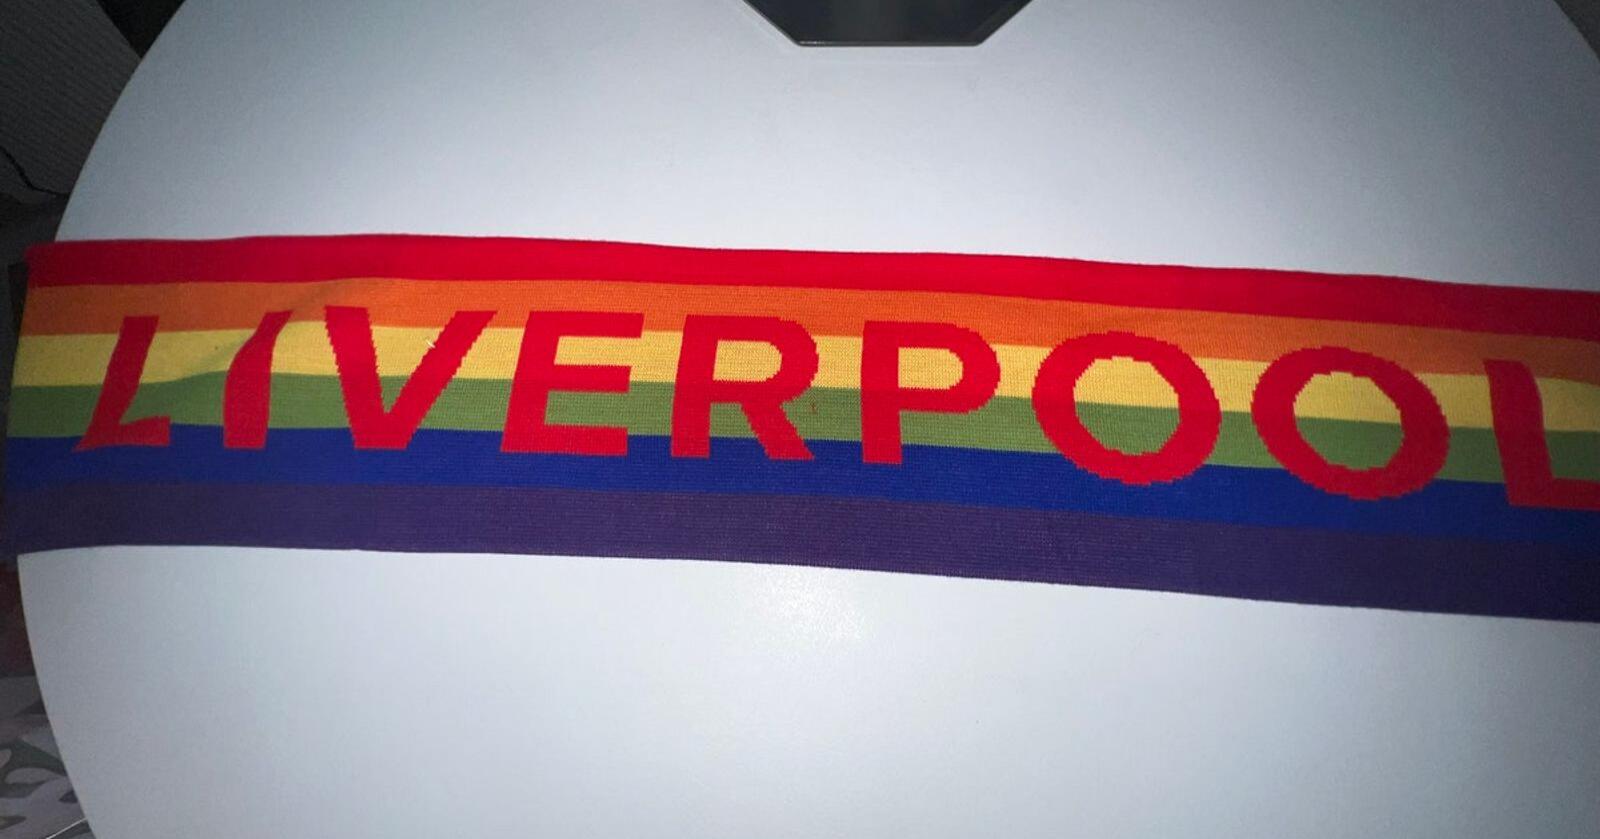 Jeg gleder meg til å bruke mitt Liverpool-skjerf med regnbuefarger under neste års Pride, skriver Lars Bilit Hagen i dette innlegget. Foto: Lars Bilit Hagen